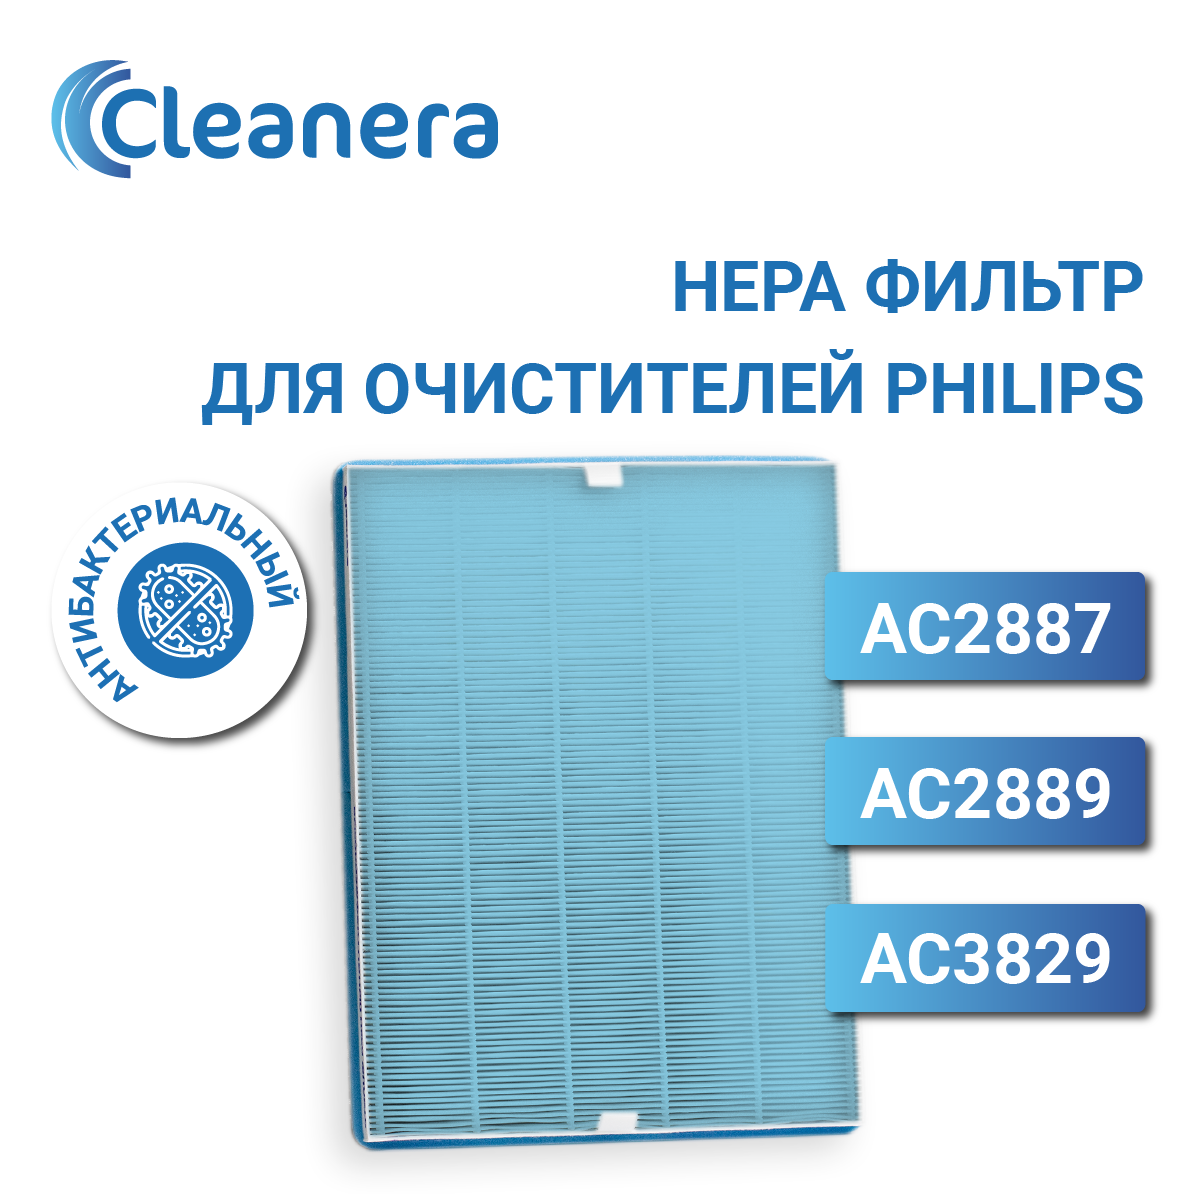 Антибактериальный фильтр для очистителя воздуха для Philips AC2887, AC2889, AC3829 (FY2422/30)